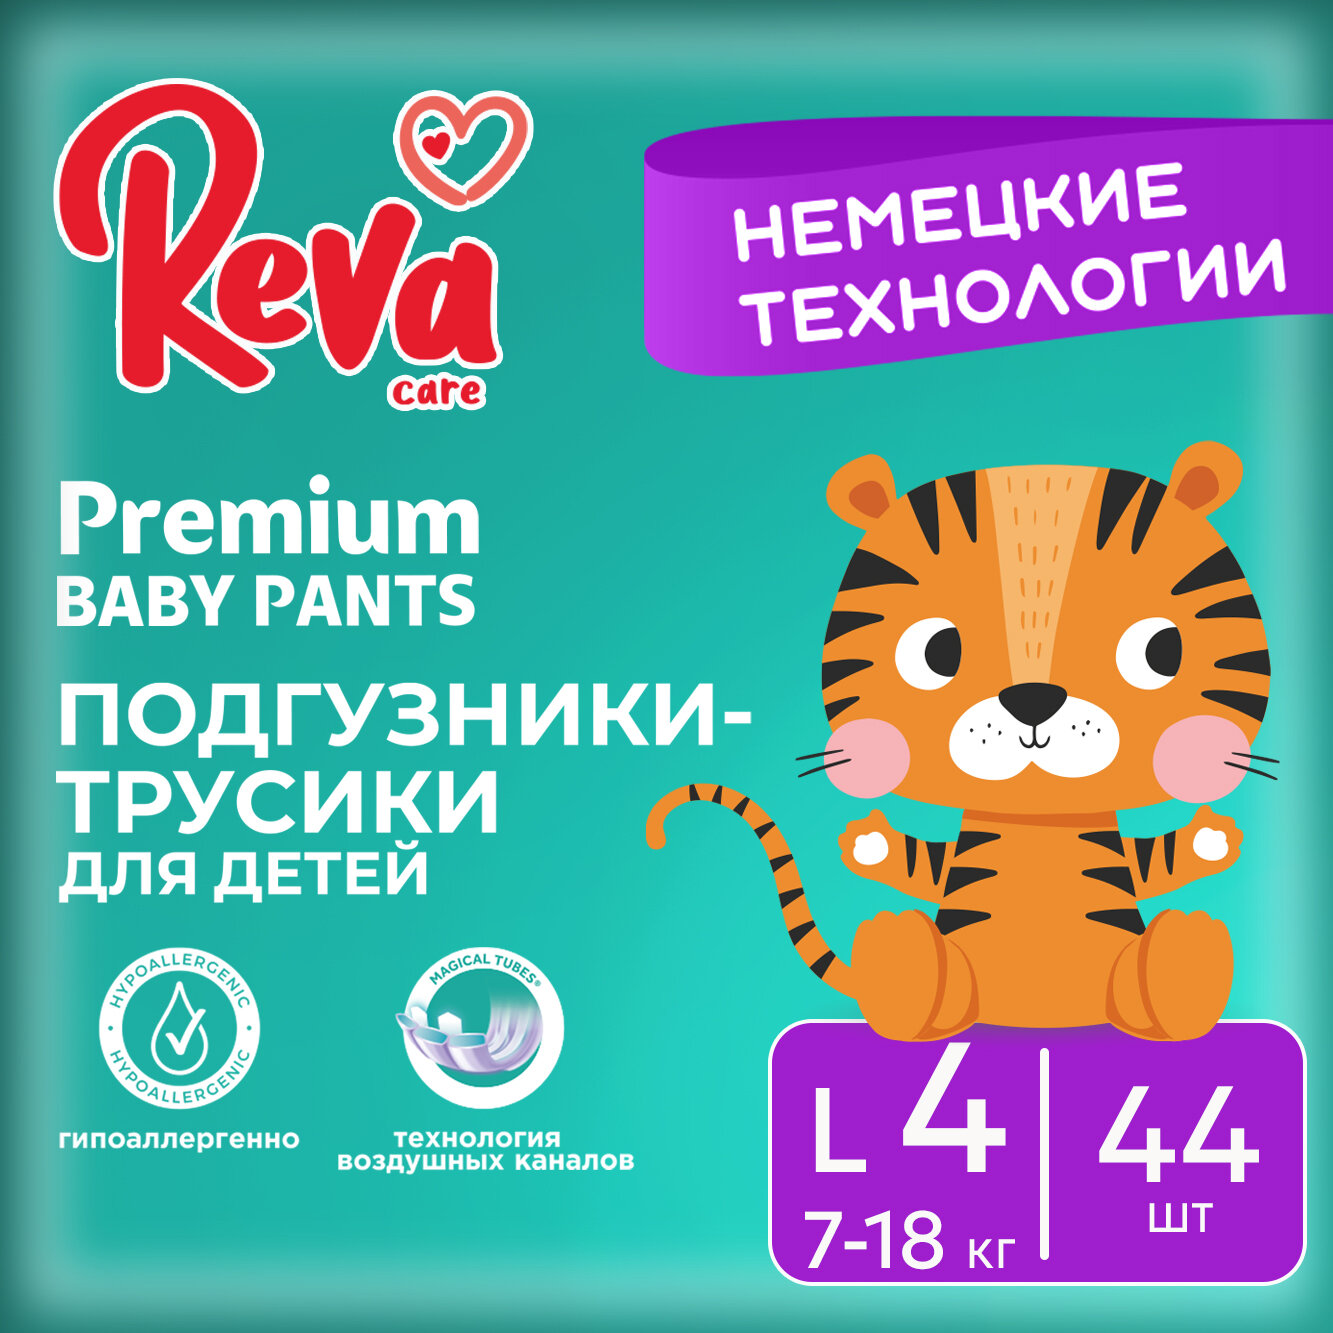 Подгузники трусики детские Reva Care Premium размер 4 L, для детей весом 7-18 кг, в упаковке 44 шт.